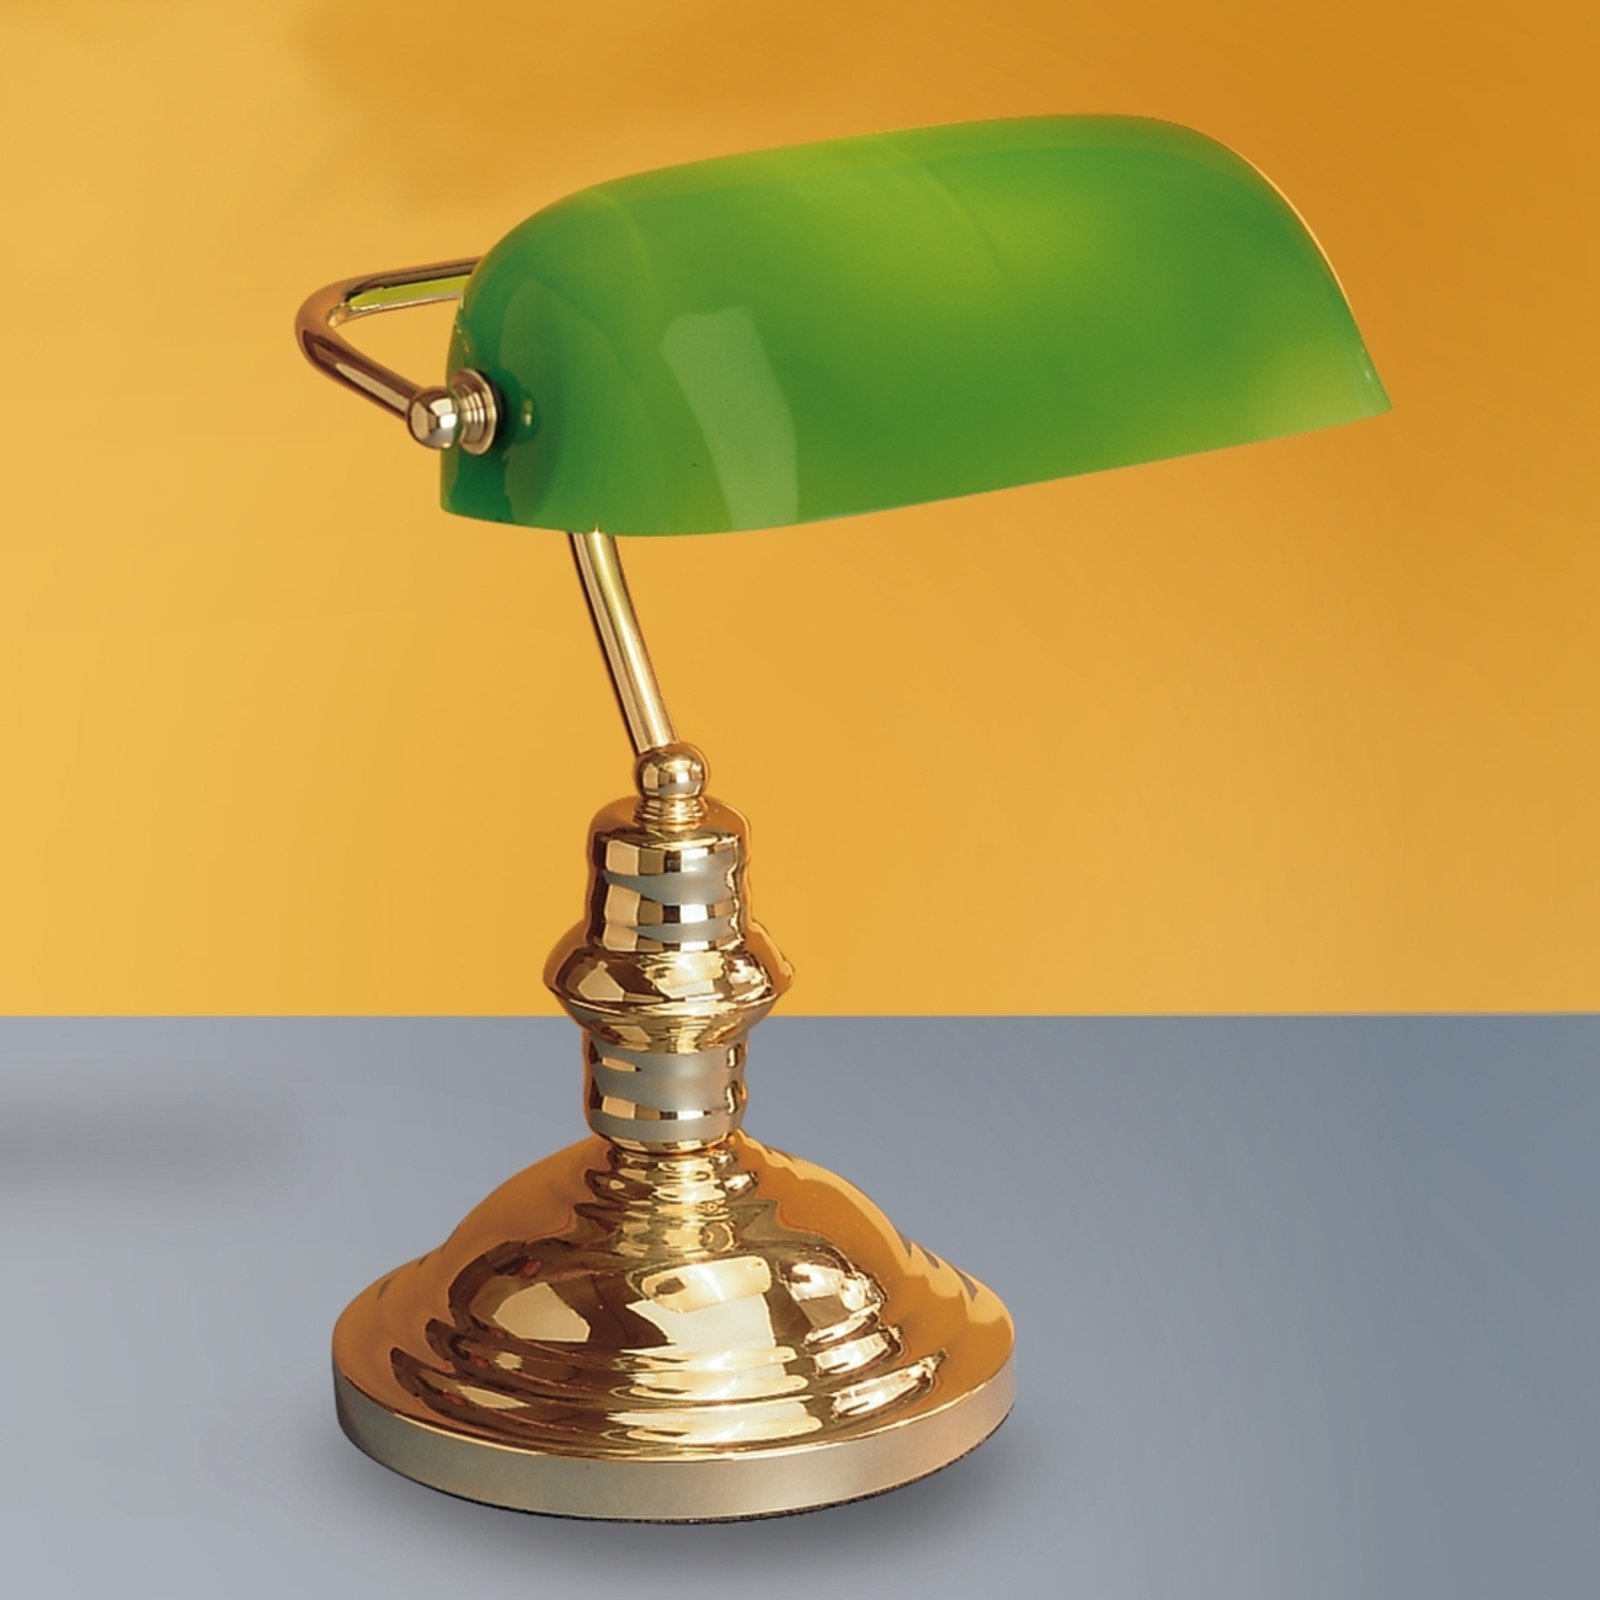 Настолна лампа Onella в банкерски стил, зелена